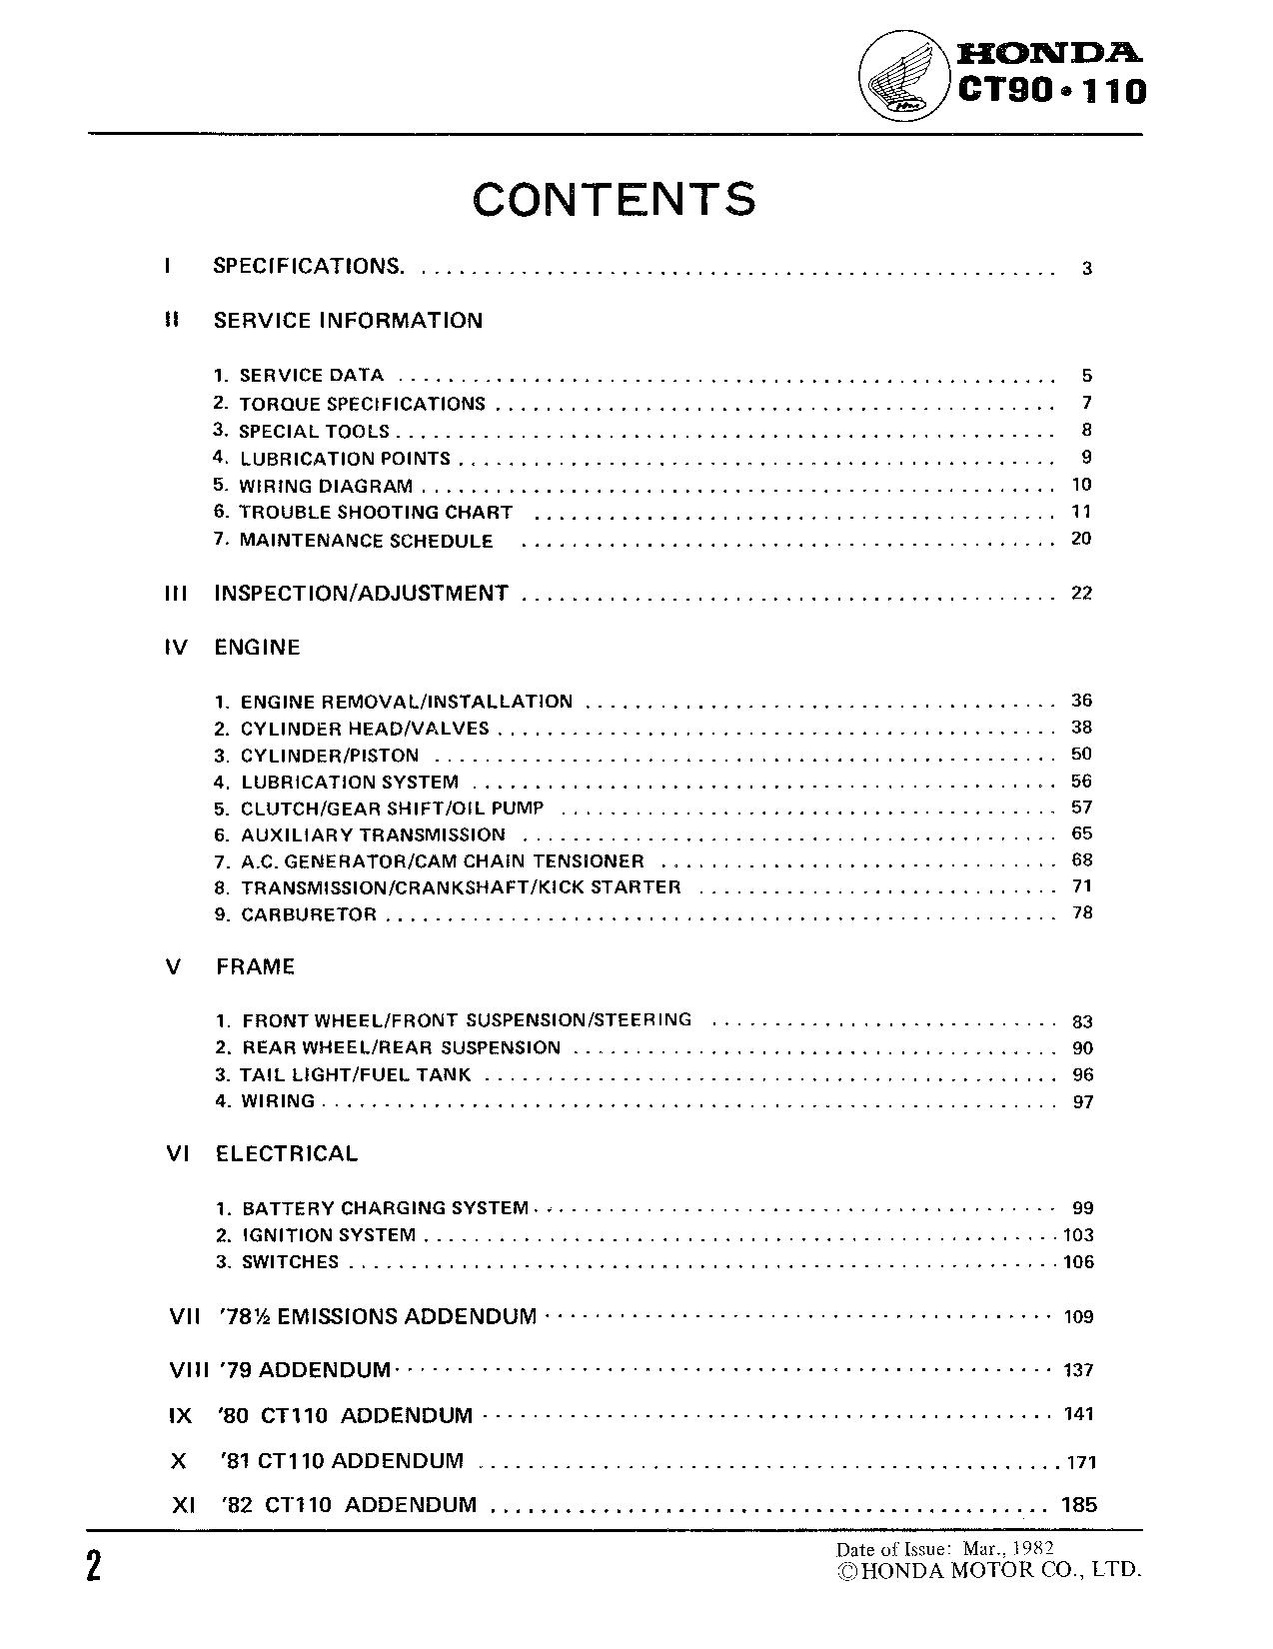 File:Honda CT90 CT110 Service Manual.pdf